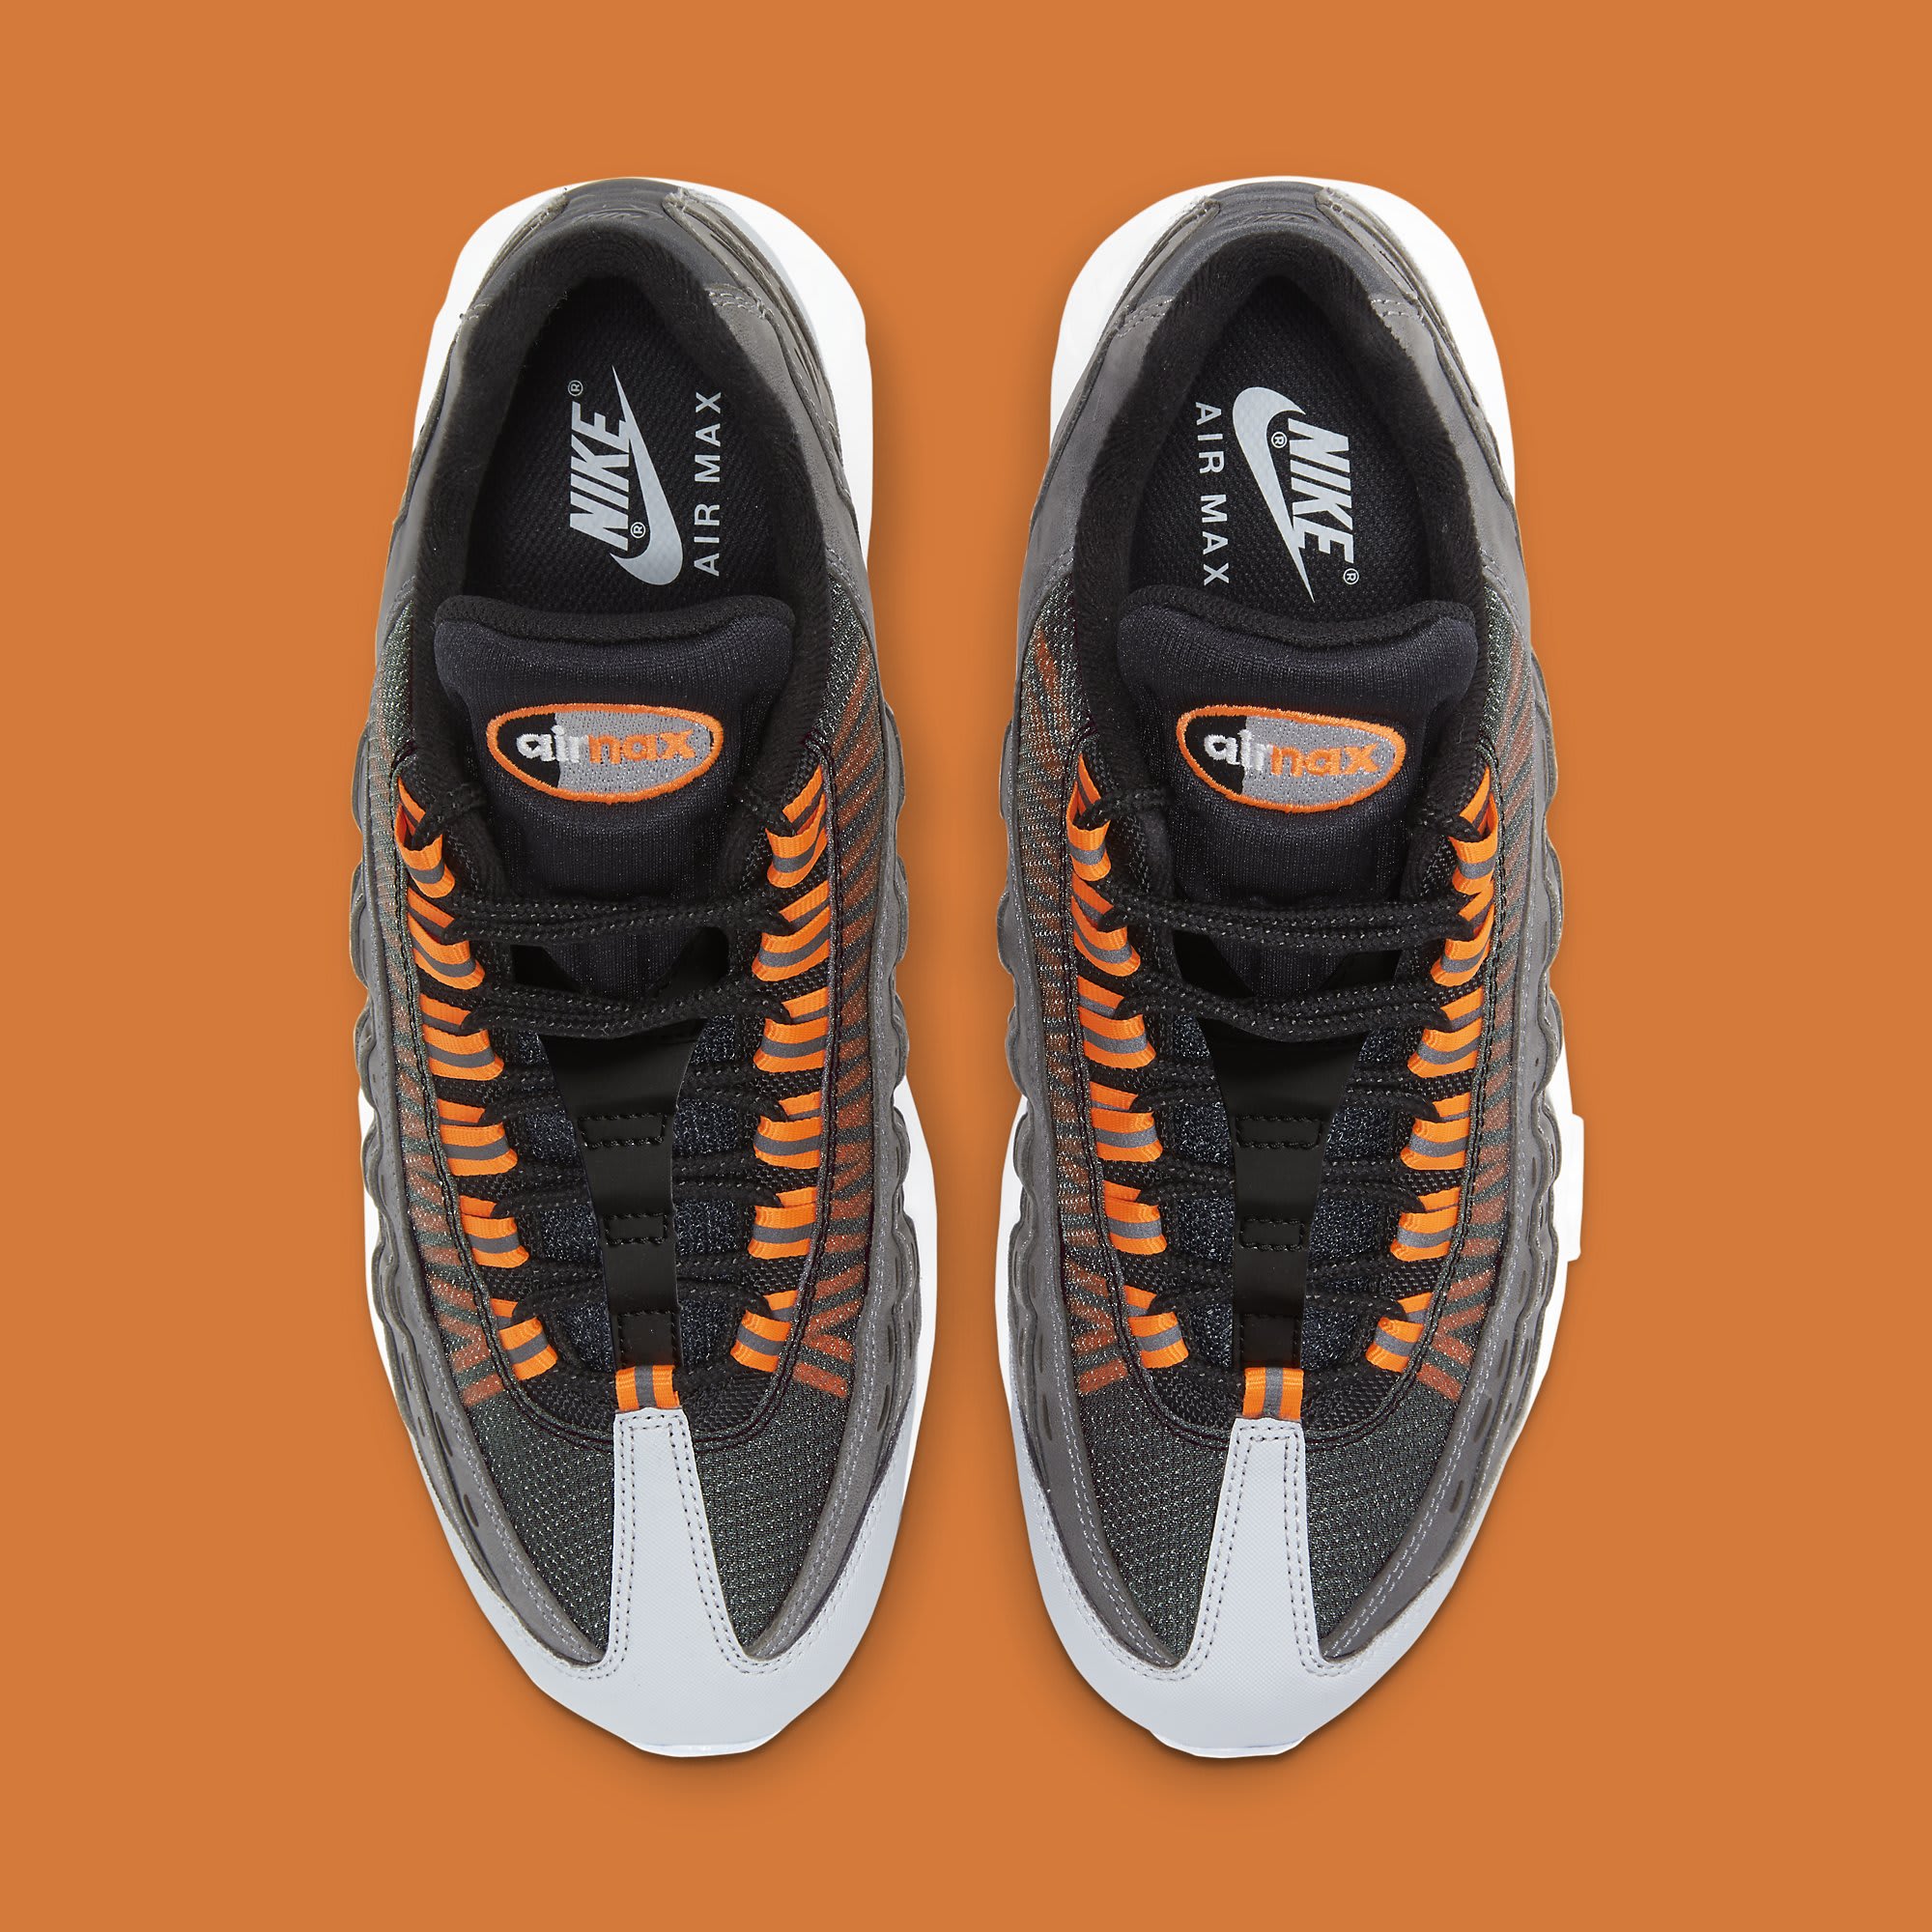 Nike Kim Jones x Air Max 95 'Total Orange